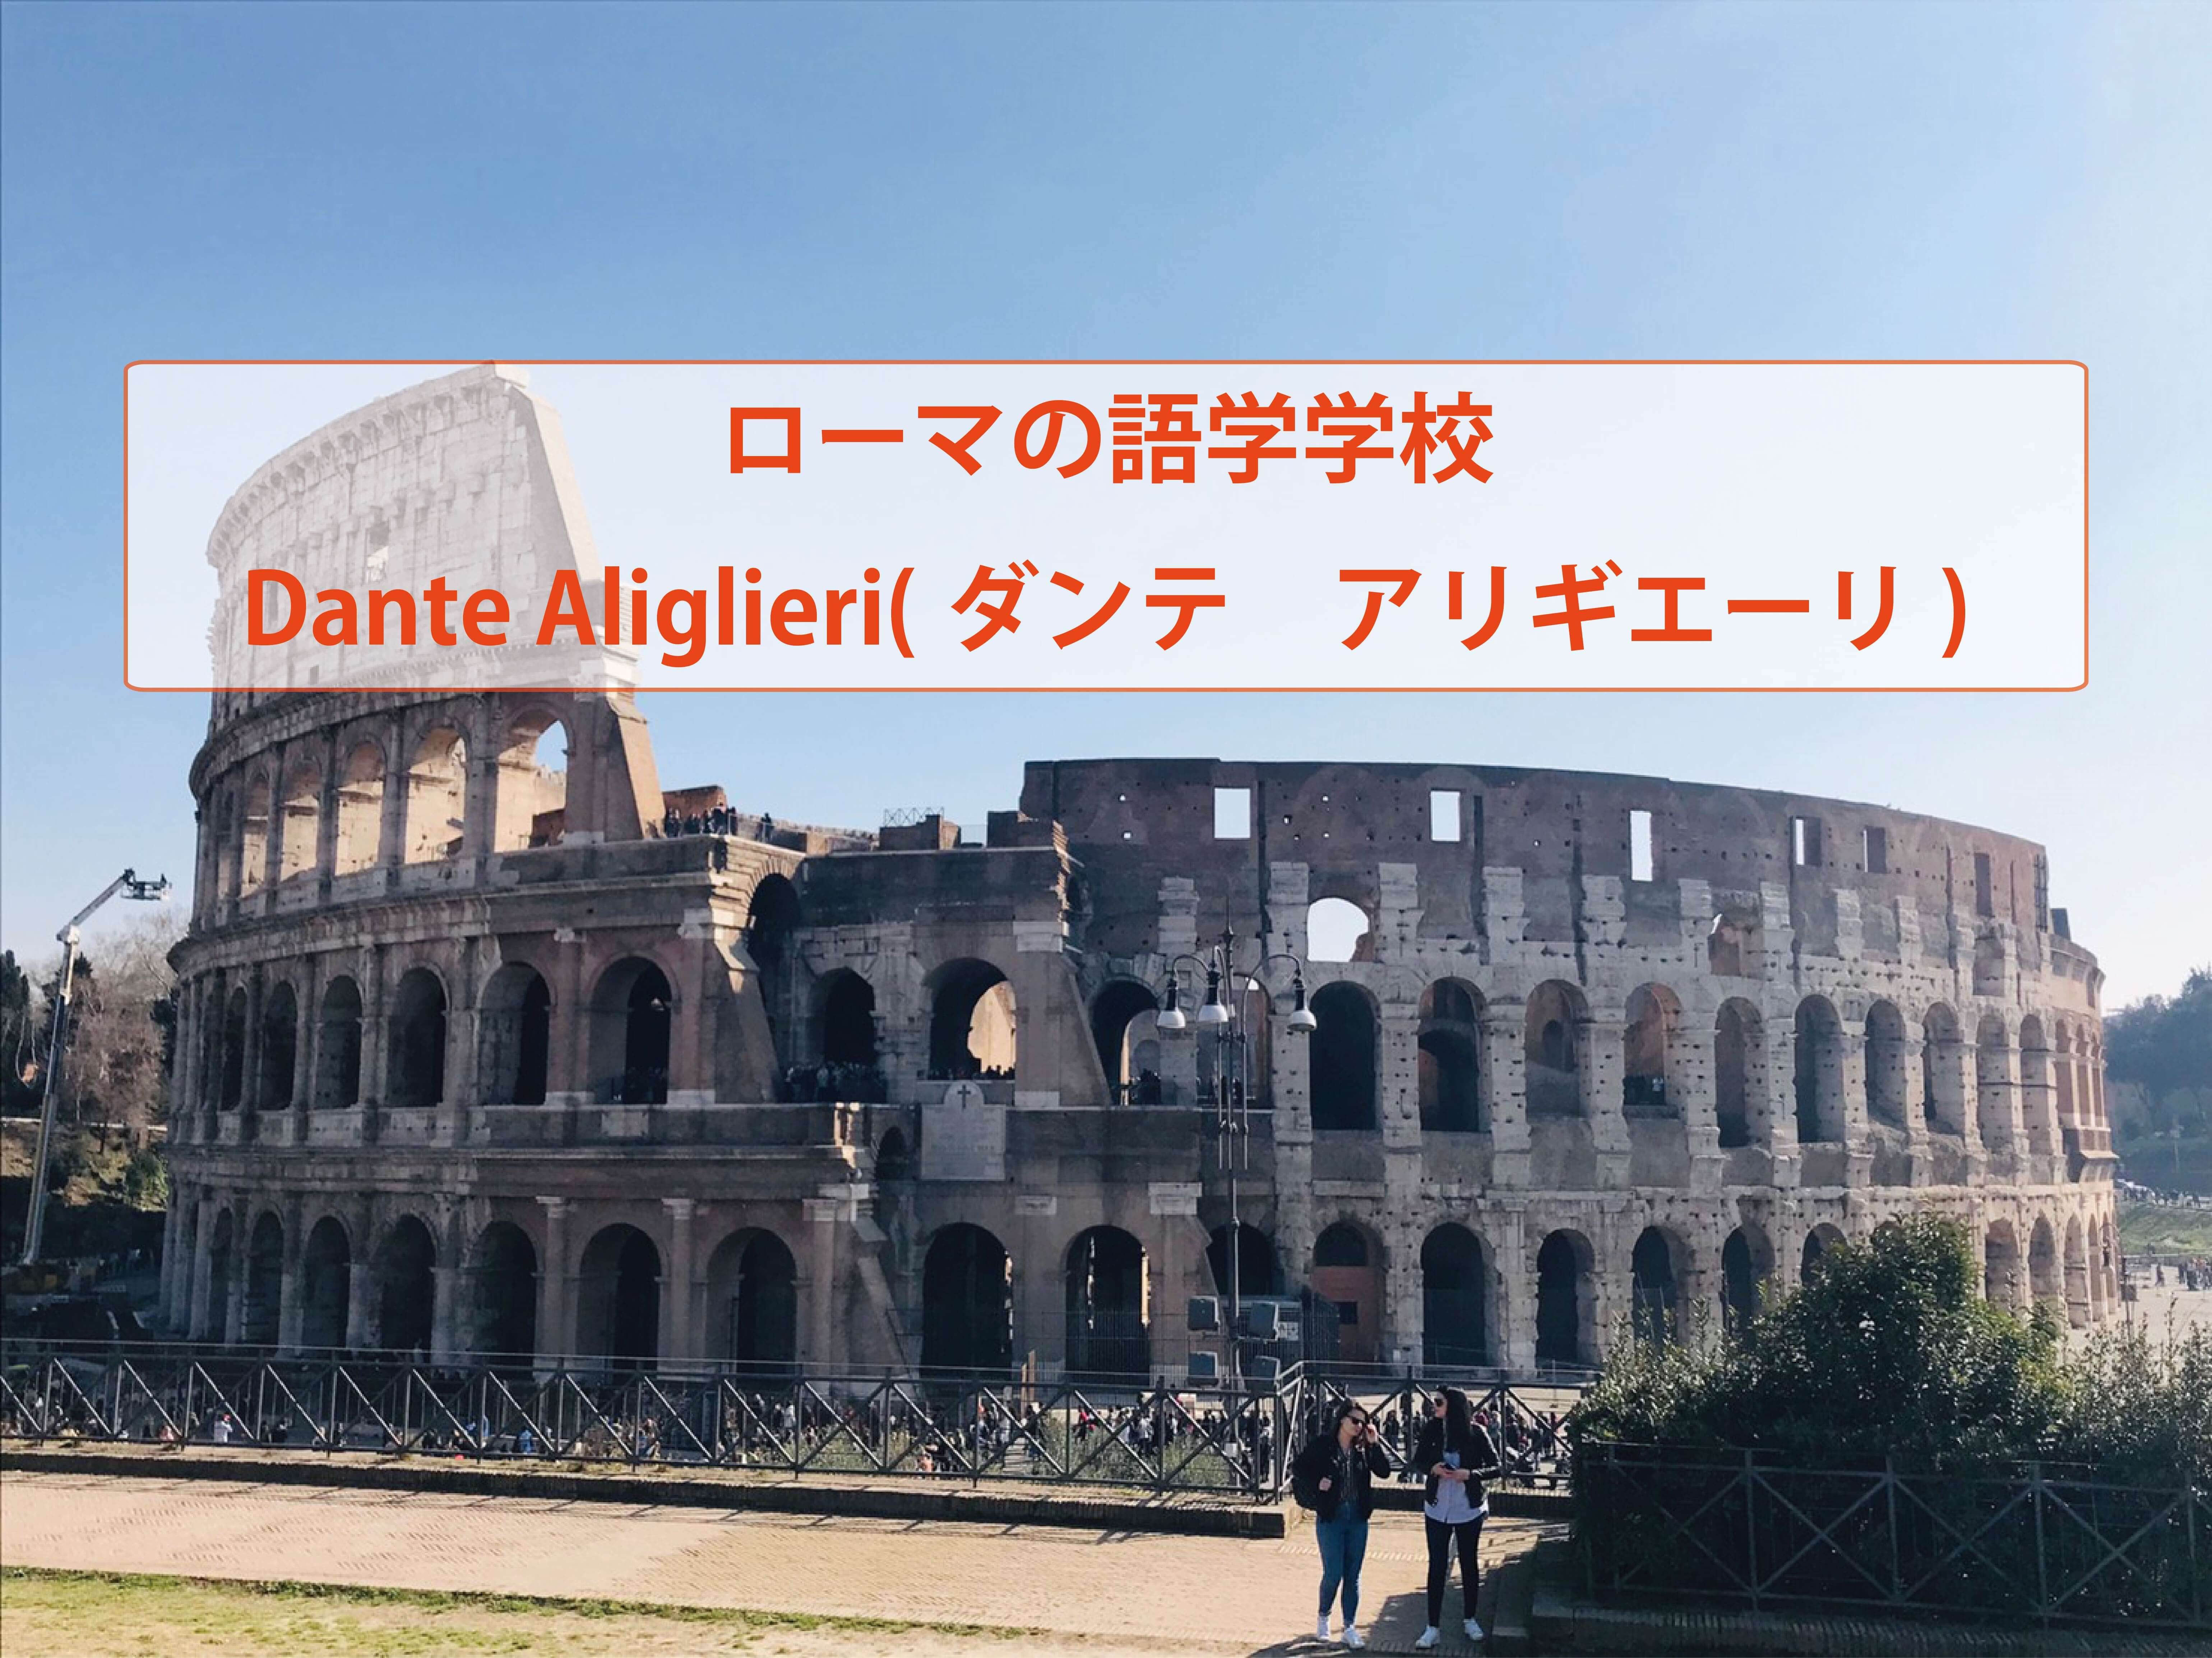 ローマの語学学校 Dante Aliglieri ダンテ アリギエーリ